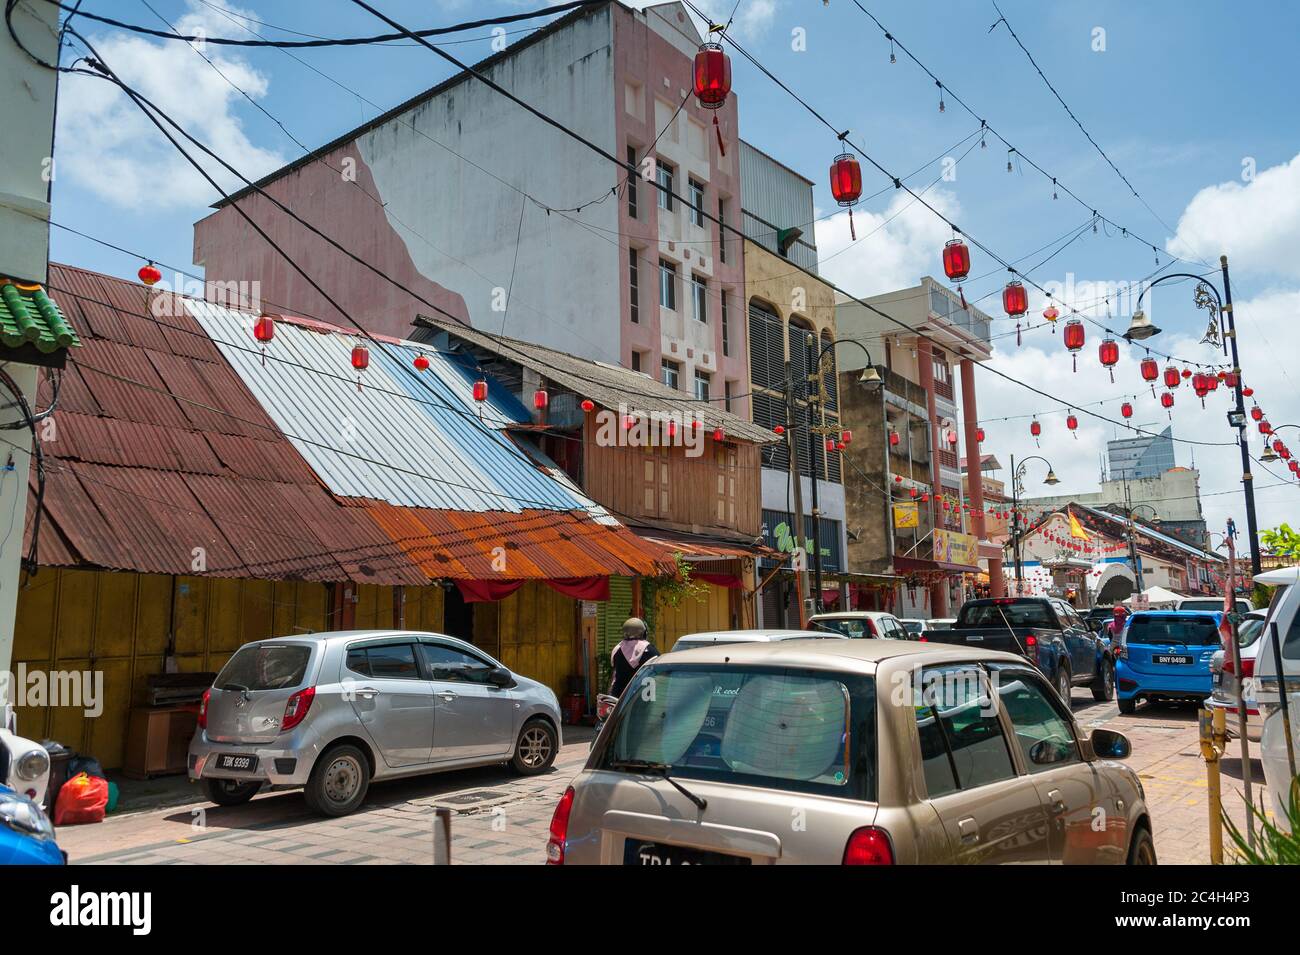 Rues colorées de Chinatown (Kampung Cina), site important du patrimoine de Terengganu. Lanternes, magasins, rue animée avec bleu, fond de ciel nuageux Banque D'Images